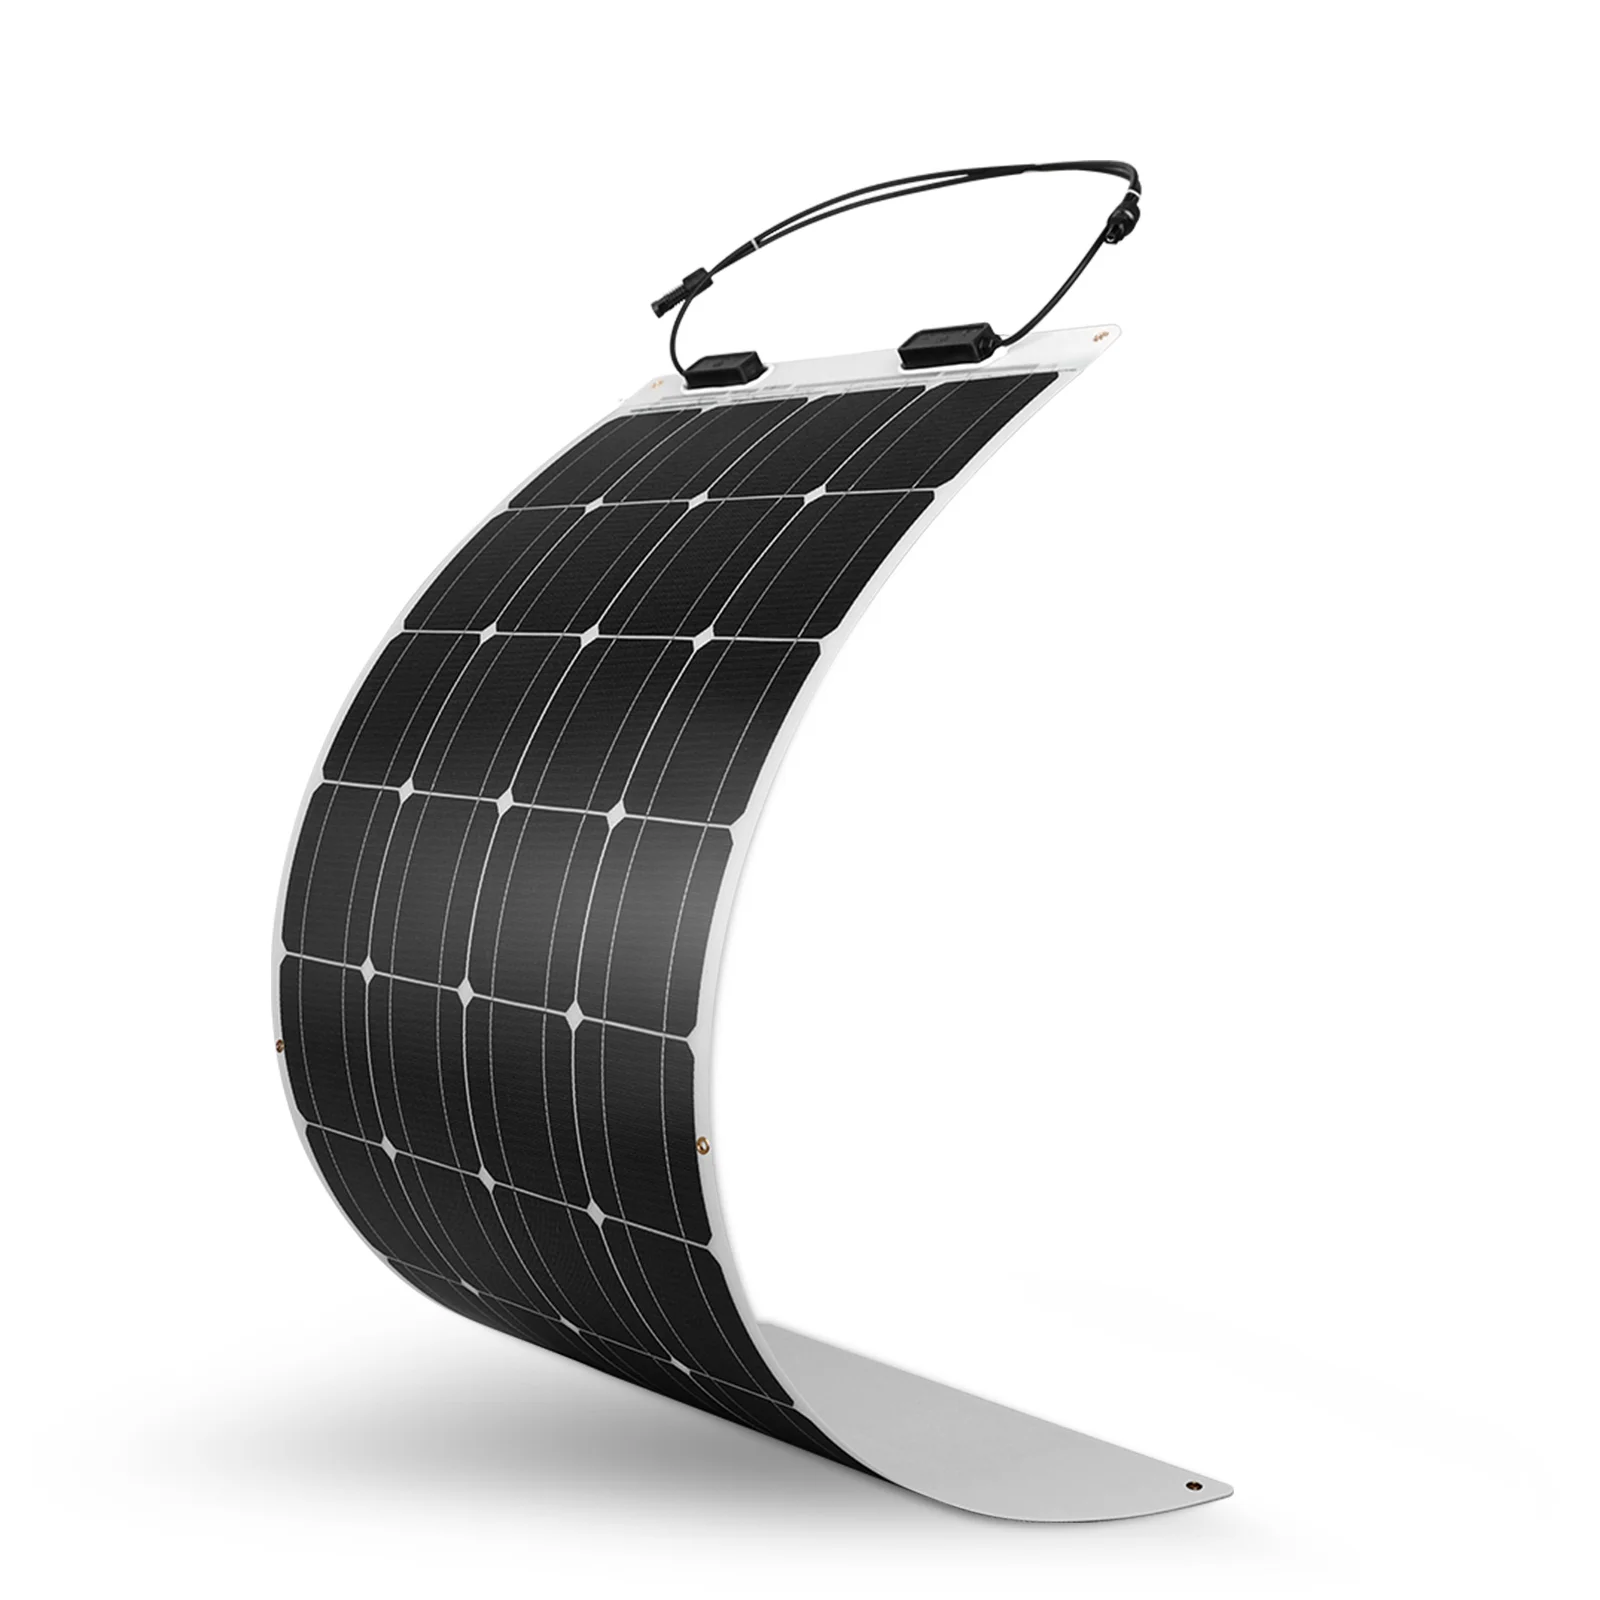 

Гибкая солнечная панель Renogy, 100 Вт, 12 В, монокристаллическая, полугибкая, гибкая, моно, сетевое зарядное устройство для морской кабины RV